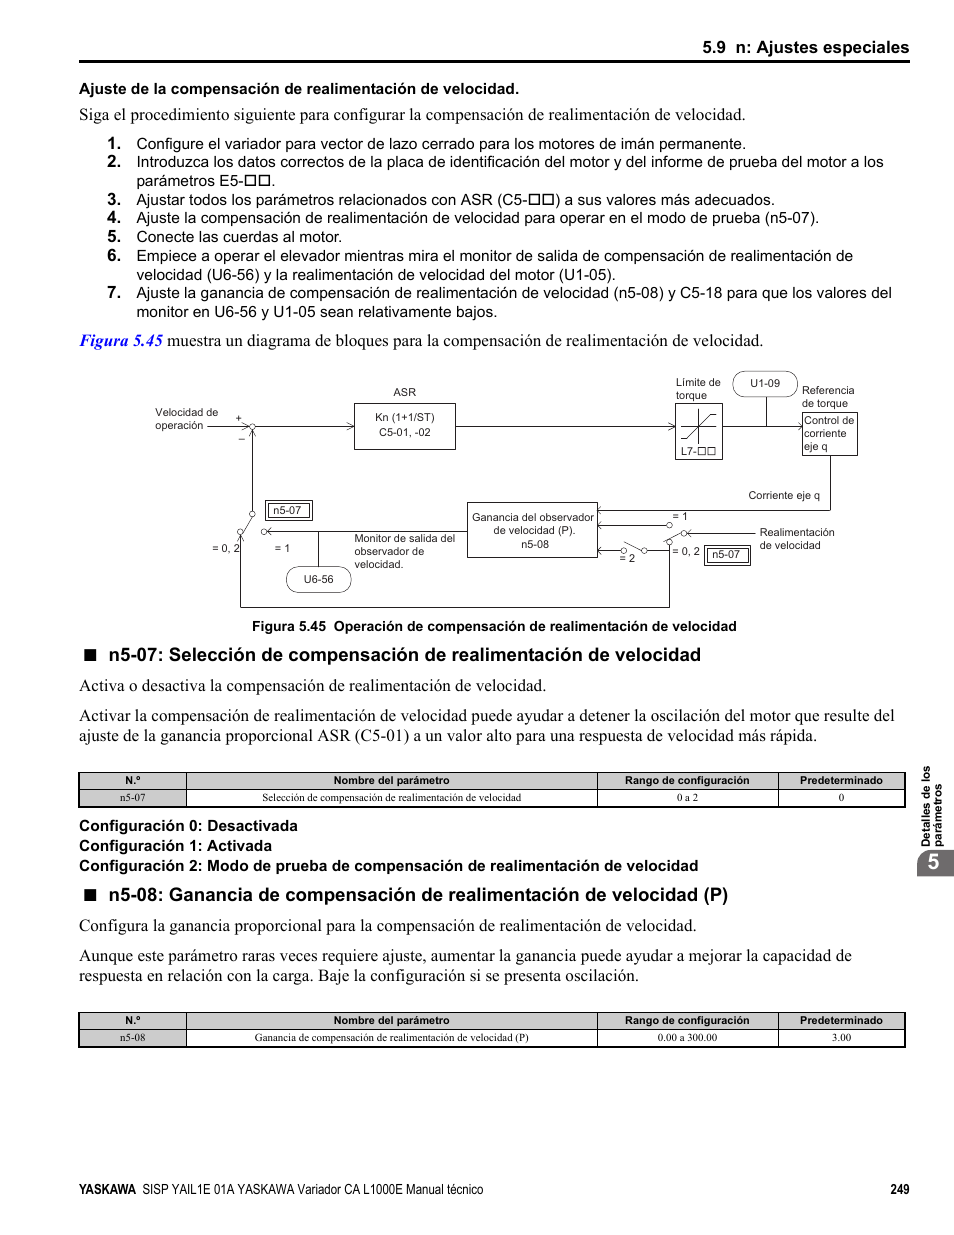 Common_tm, 9 n: ajustes especiales | Yaskawa CIMR-LE Manual del usuario | Página 249 / 520